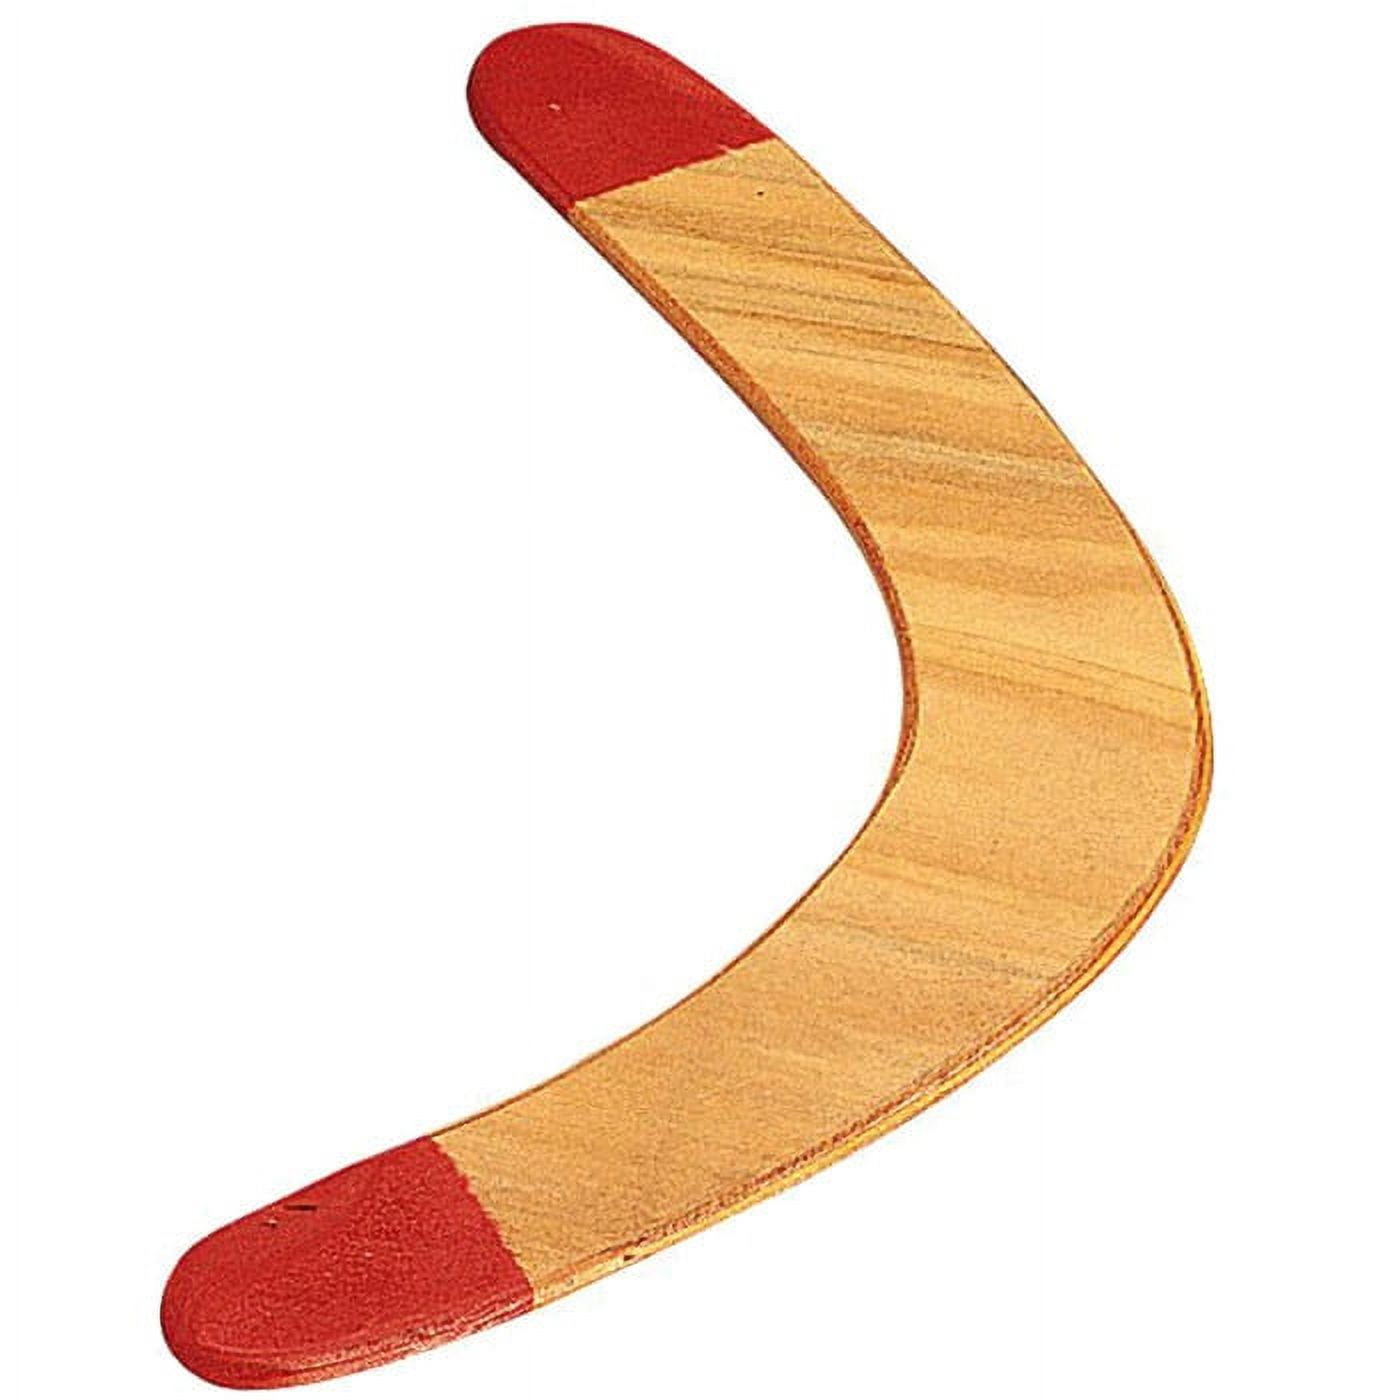 Buy Boomerang de madera retro Online Spain